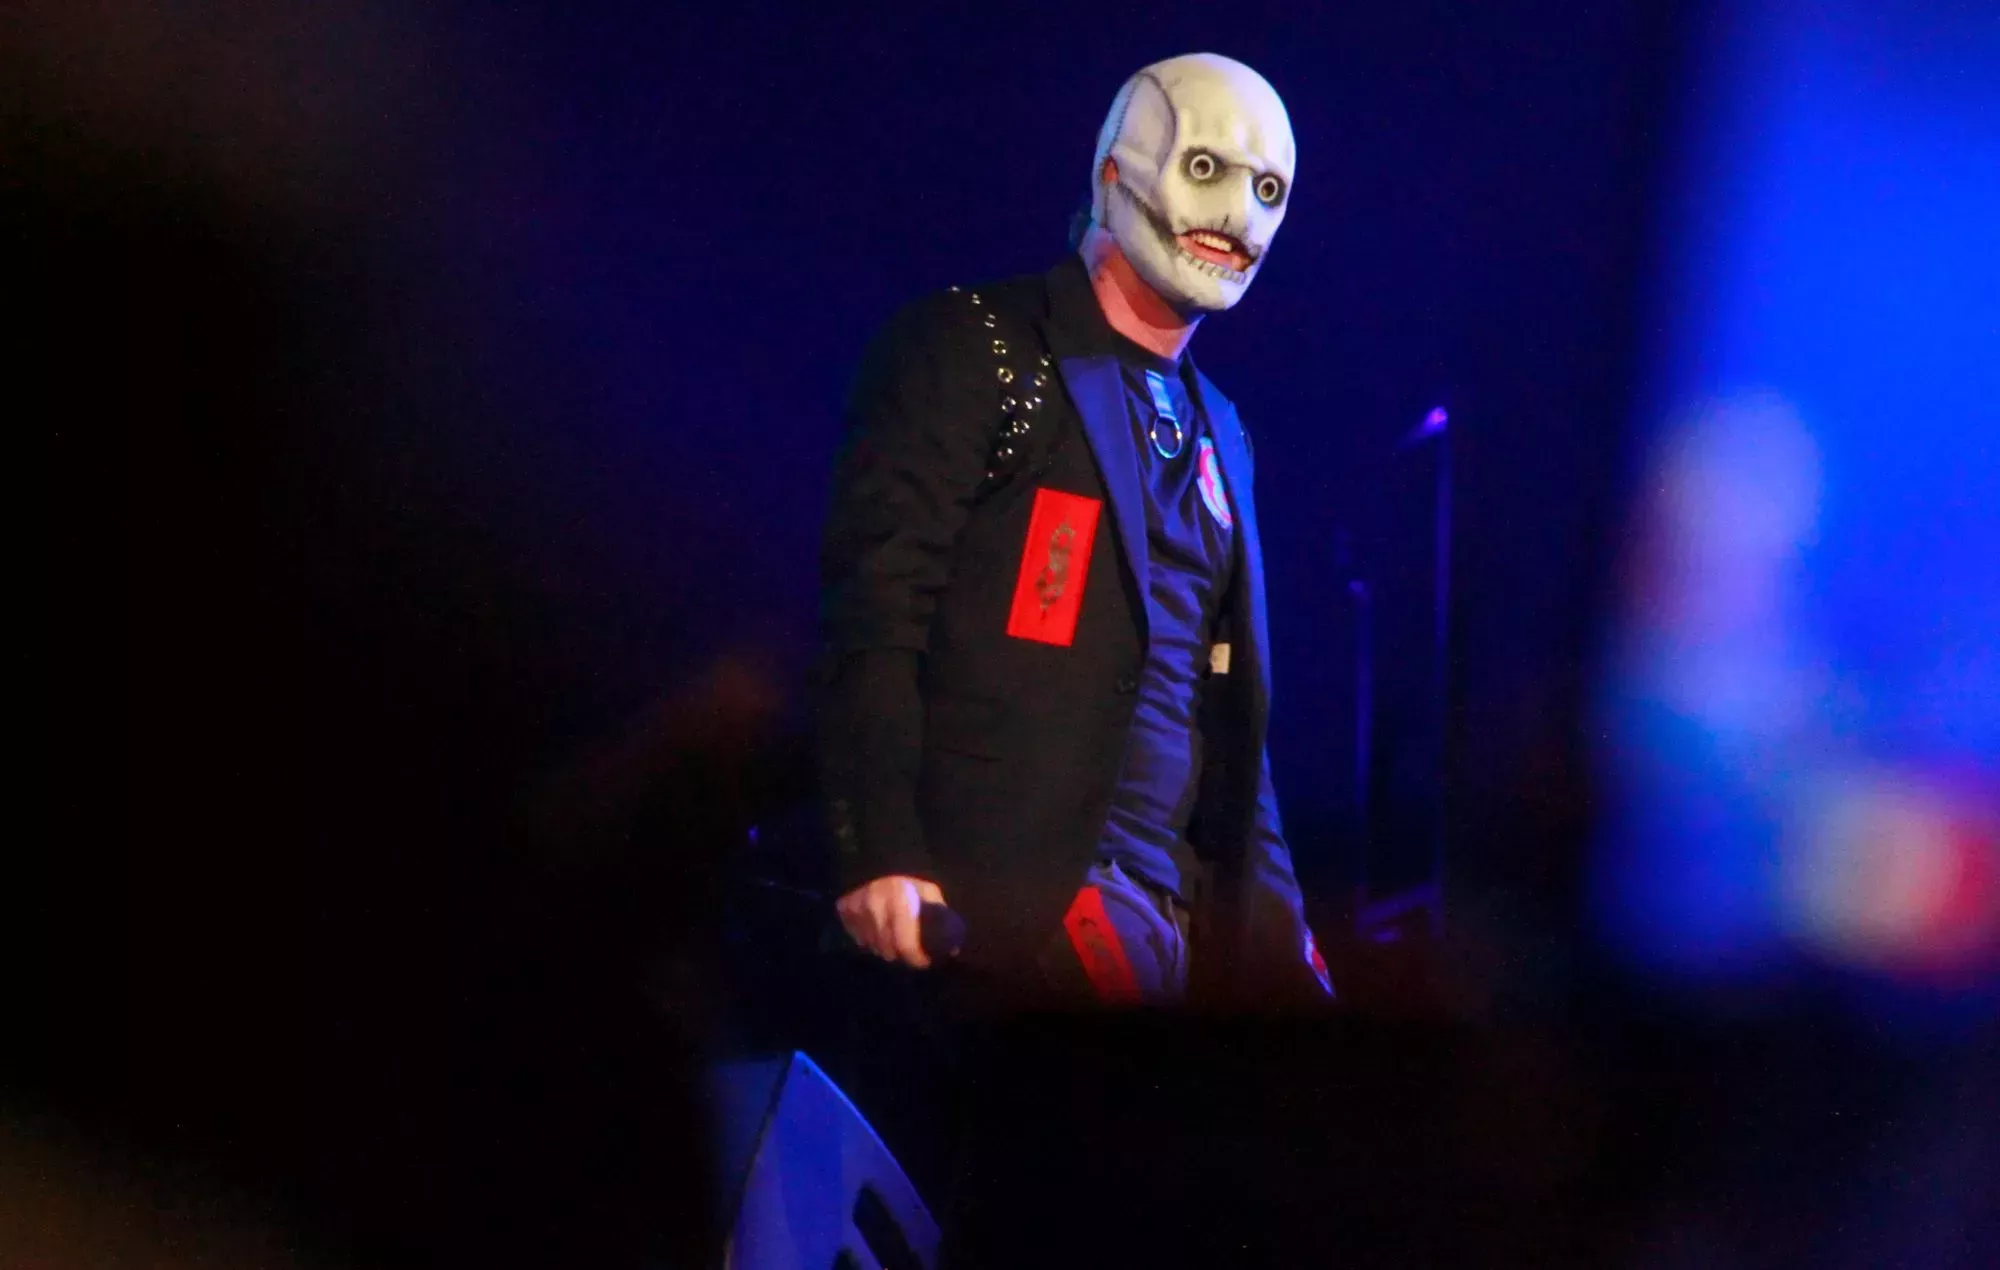 El vocalista original de Slipknot interpretará íntegramente la maqueta del grupo en una gira